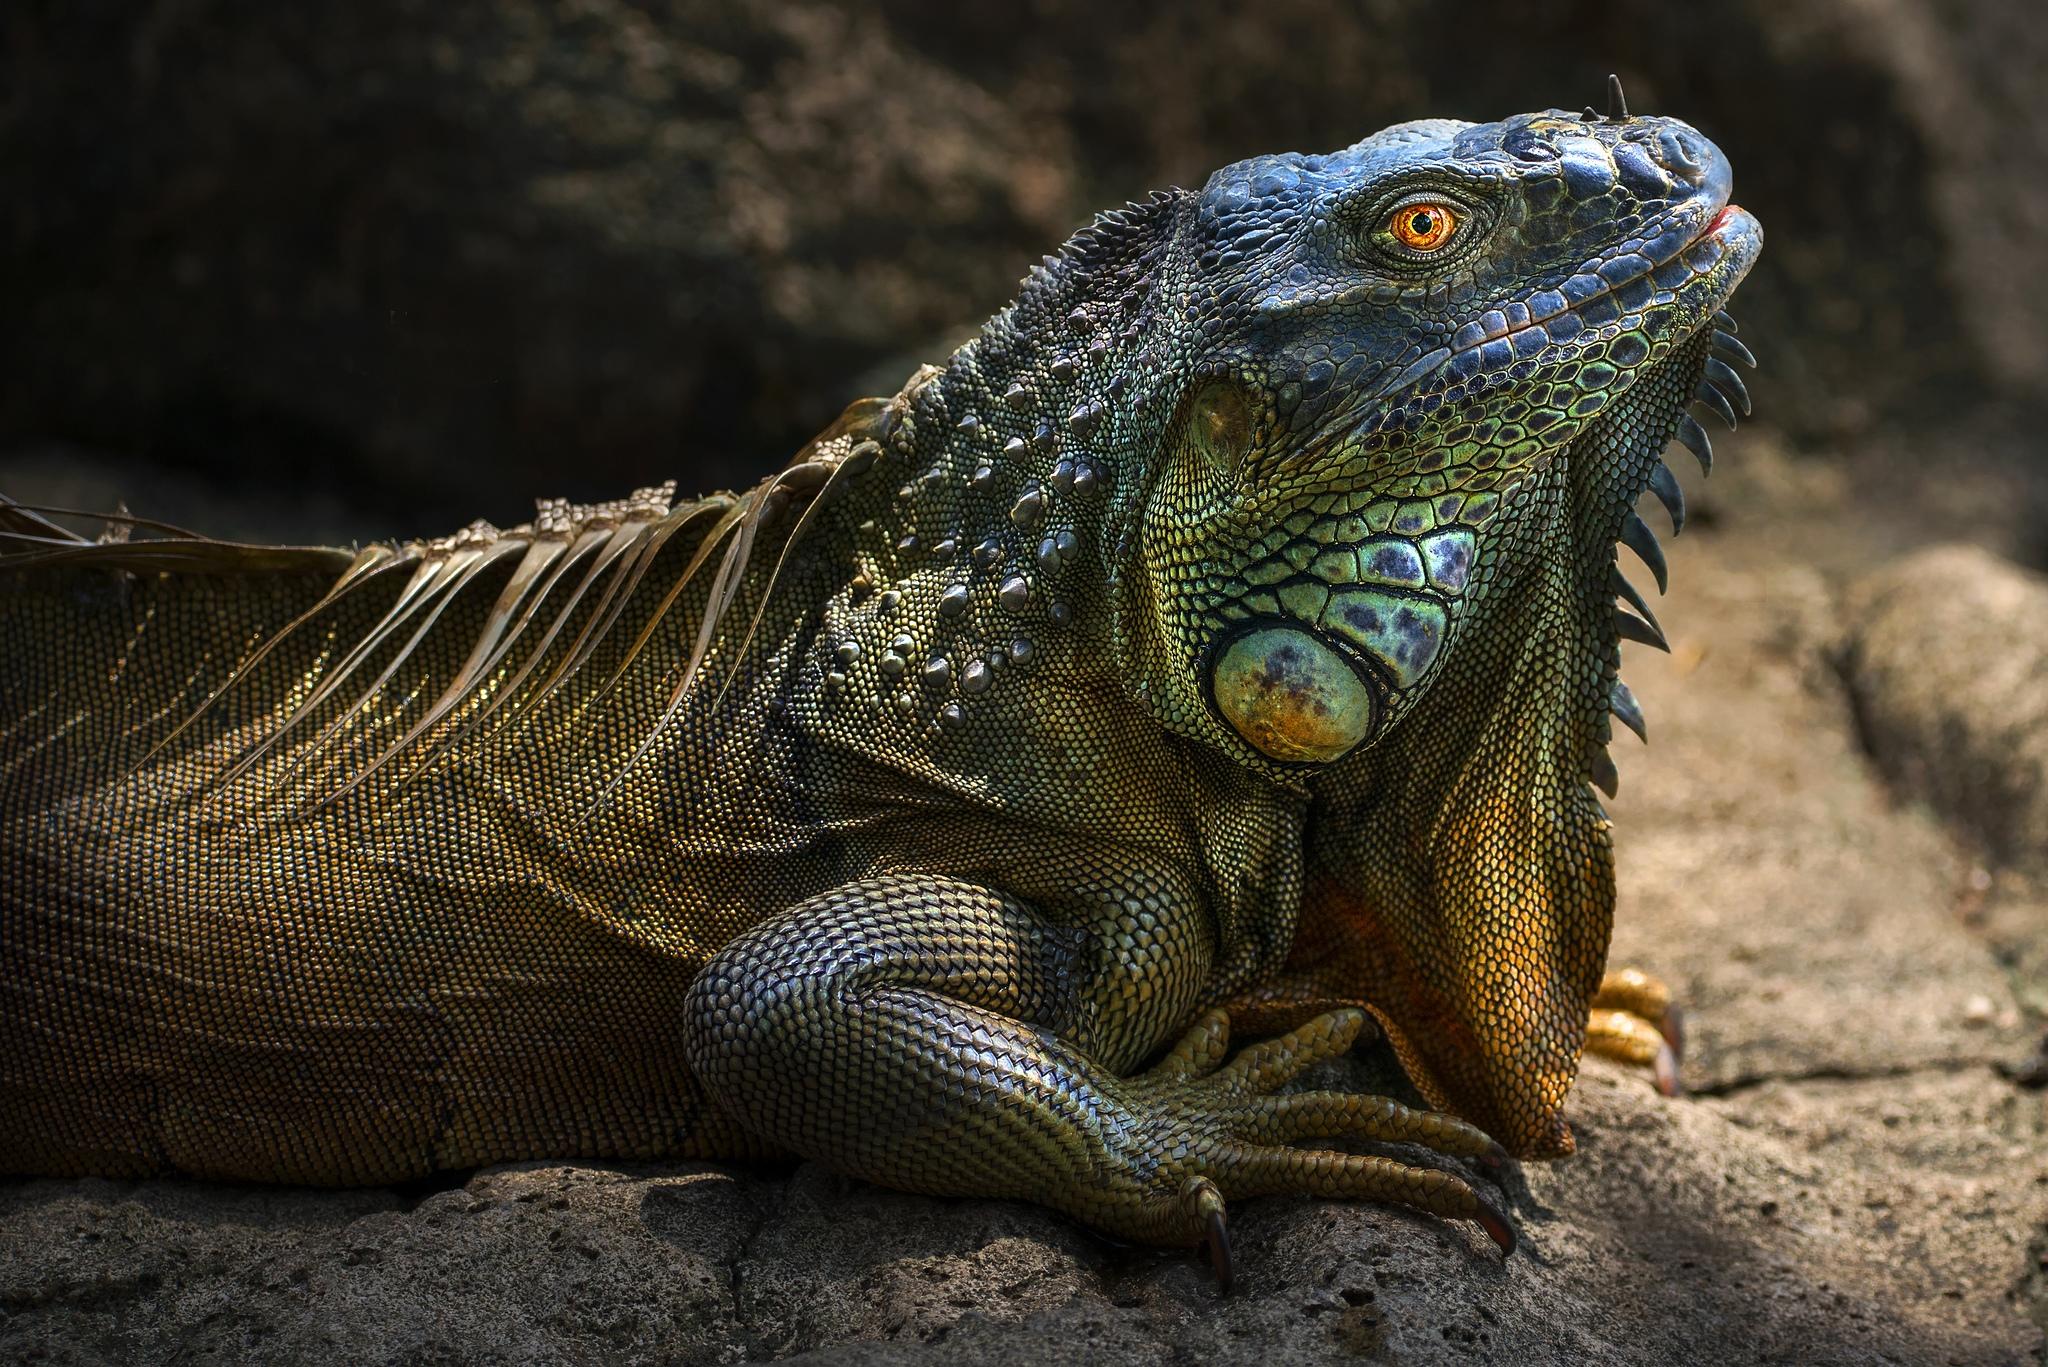 Фото бесплатно игуана, iguana, крупная растительноядная ящерица семейства игуановых